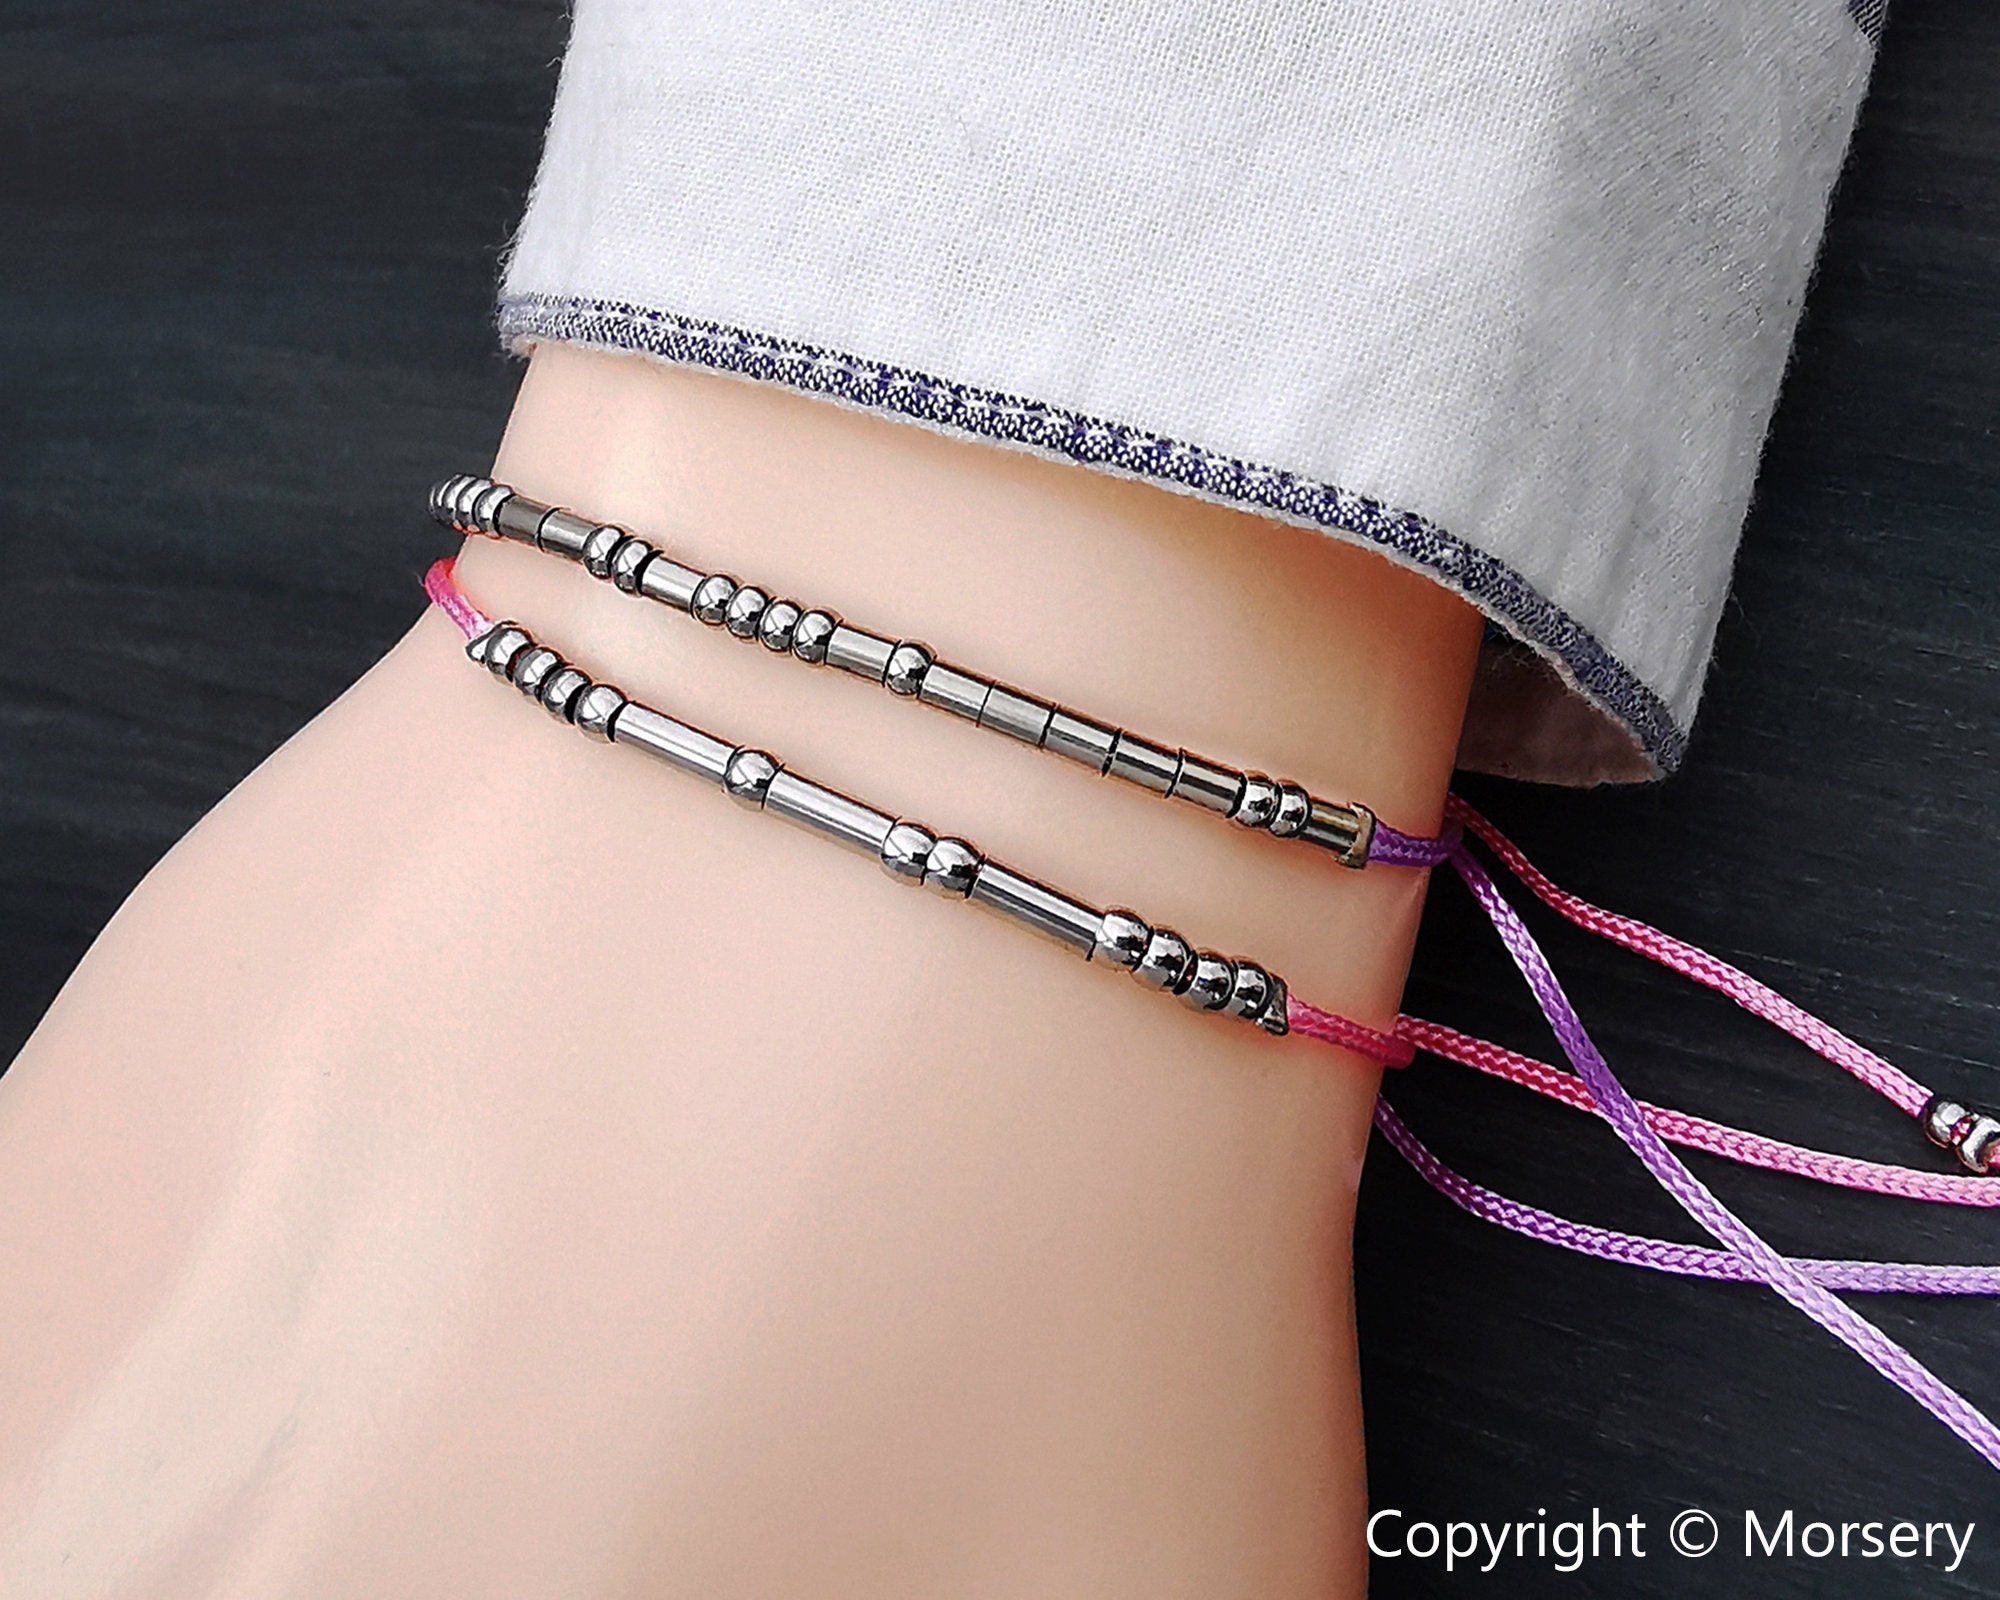 KDQUEERY Morse Code Bracelets for Women Men, String Bracelets,  Inspirational Bracelets Gifts for Couples Mom Daughter Best Friend  Adjustable bracelets